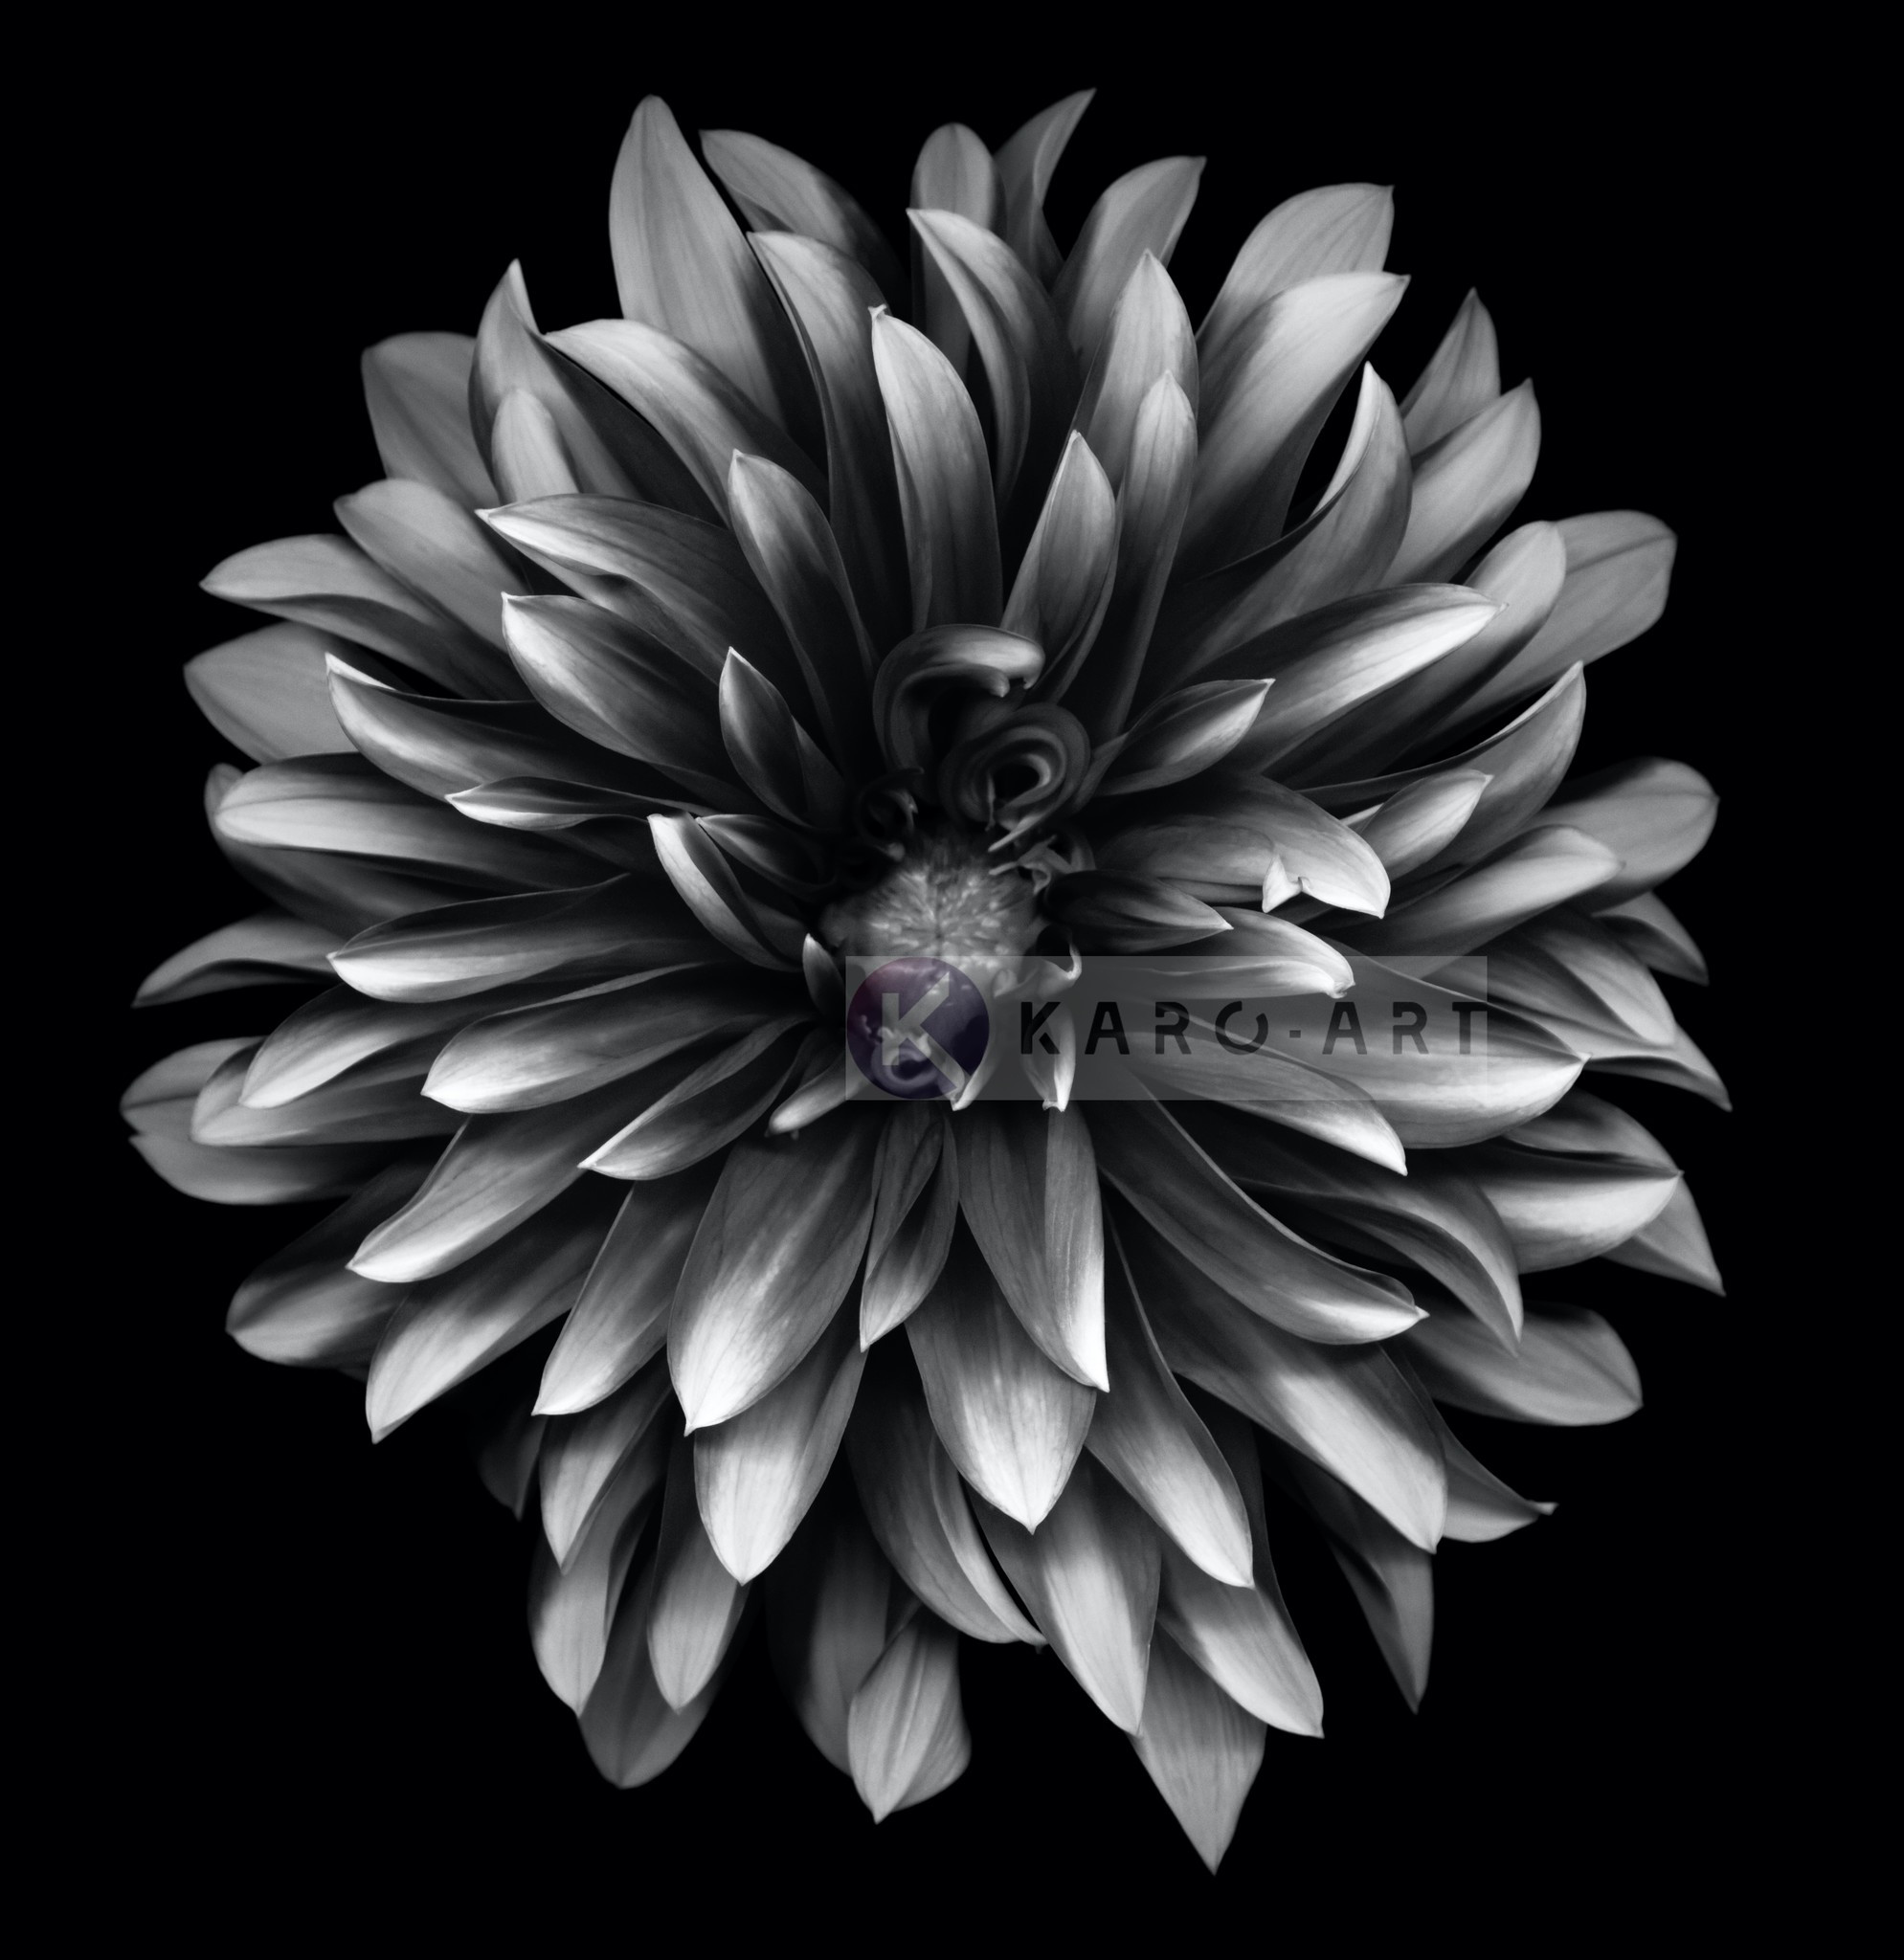 Afbeelding op acrylglas - Dahlia Zwart-Wit